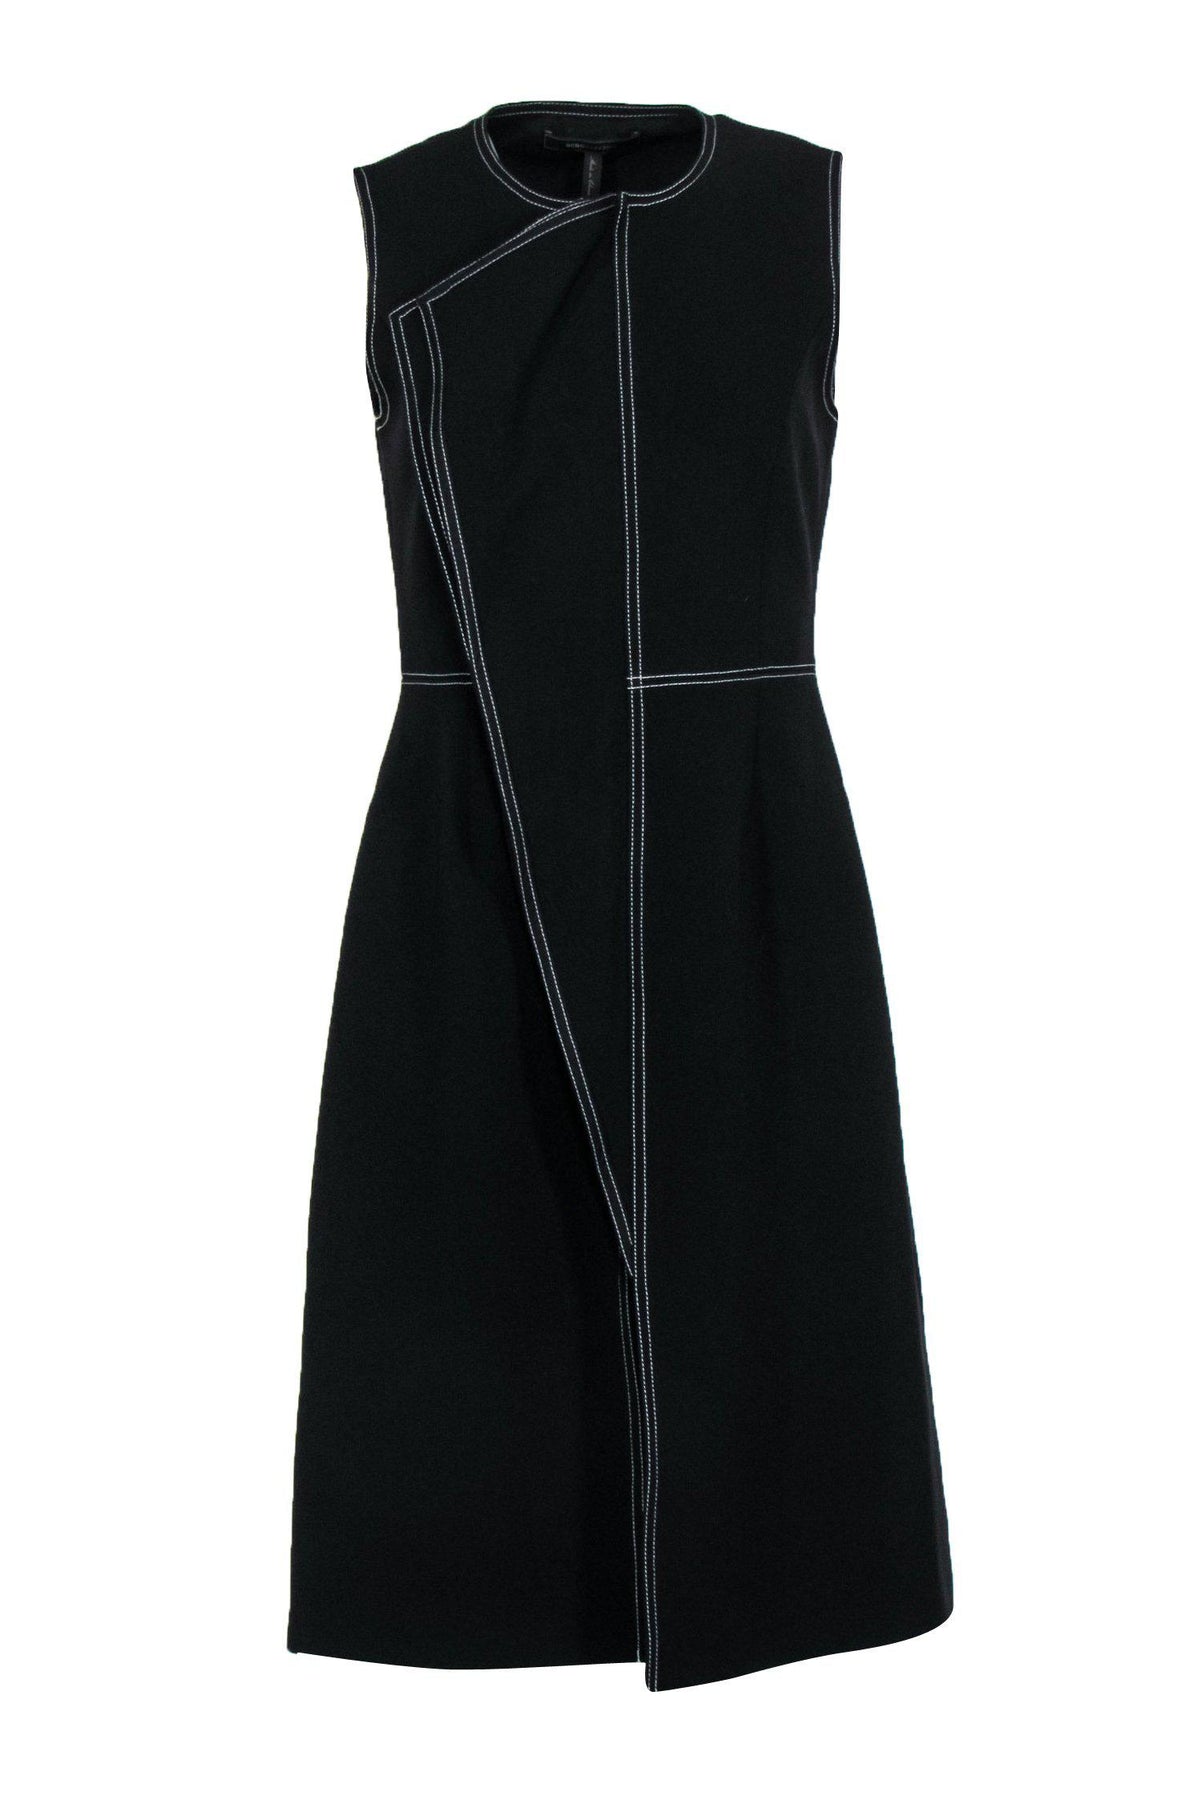 Shop Our BCBG Max Azria - Black Longline Zip-Up Draped Vest w/ White ...